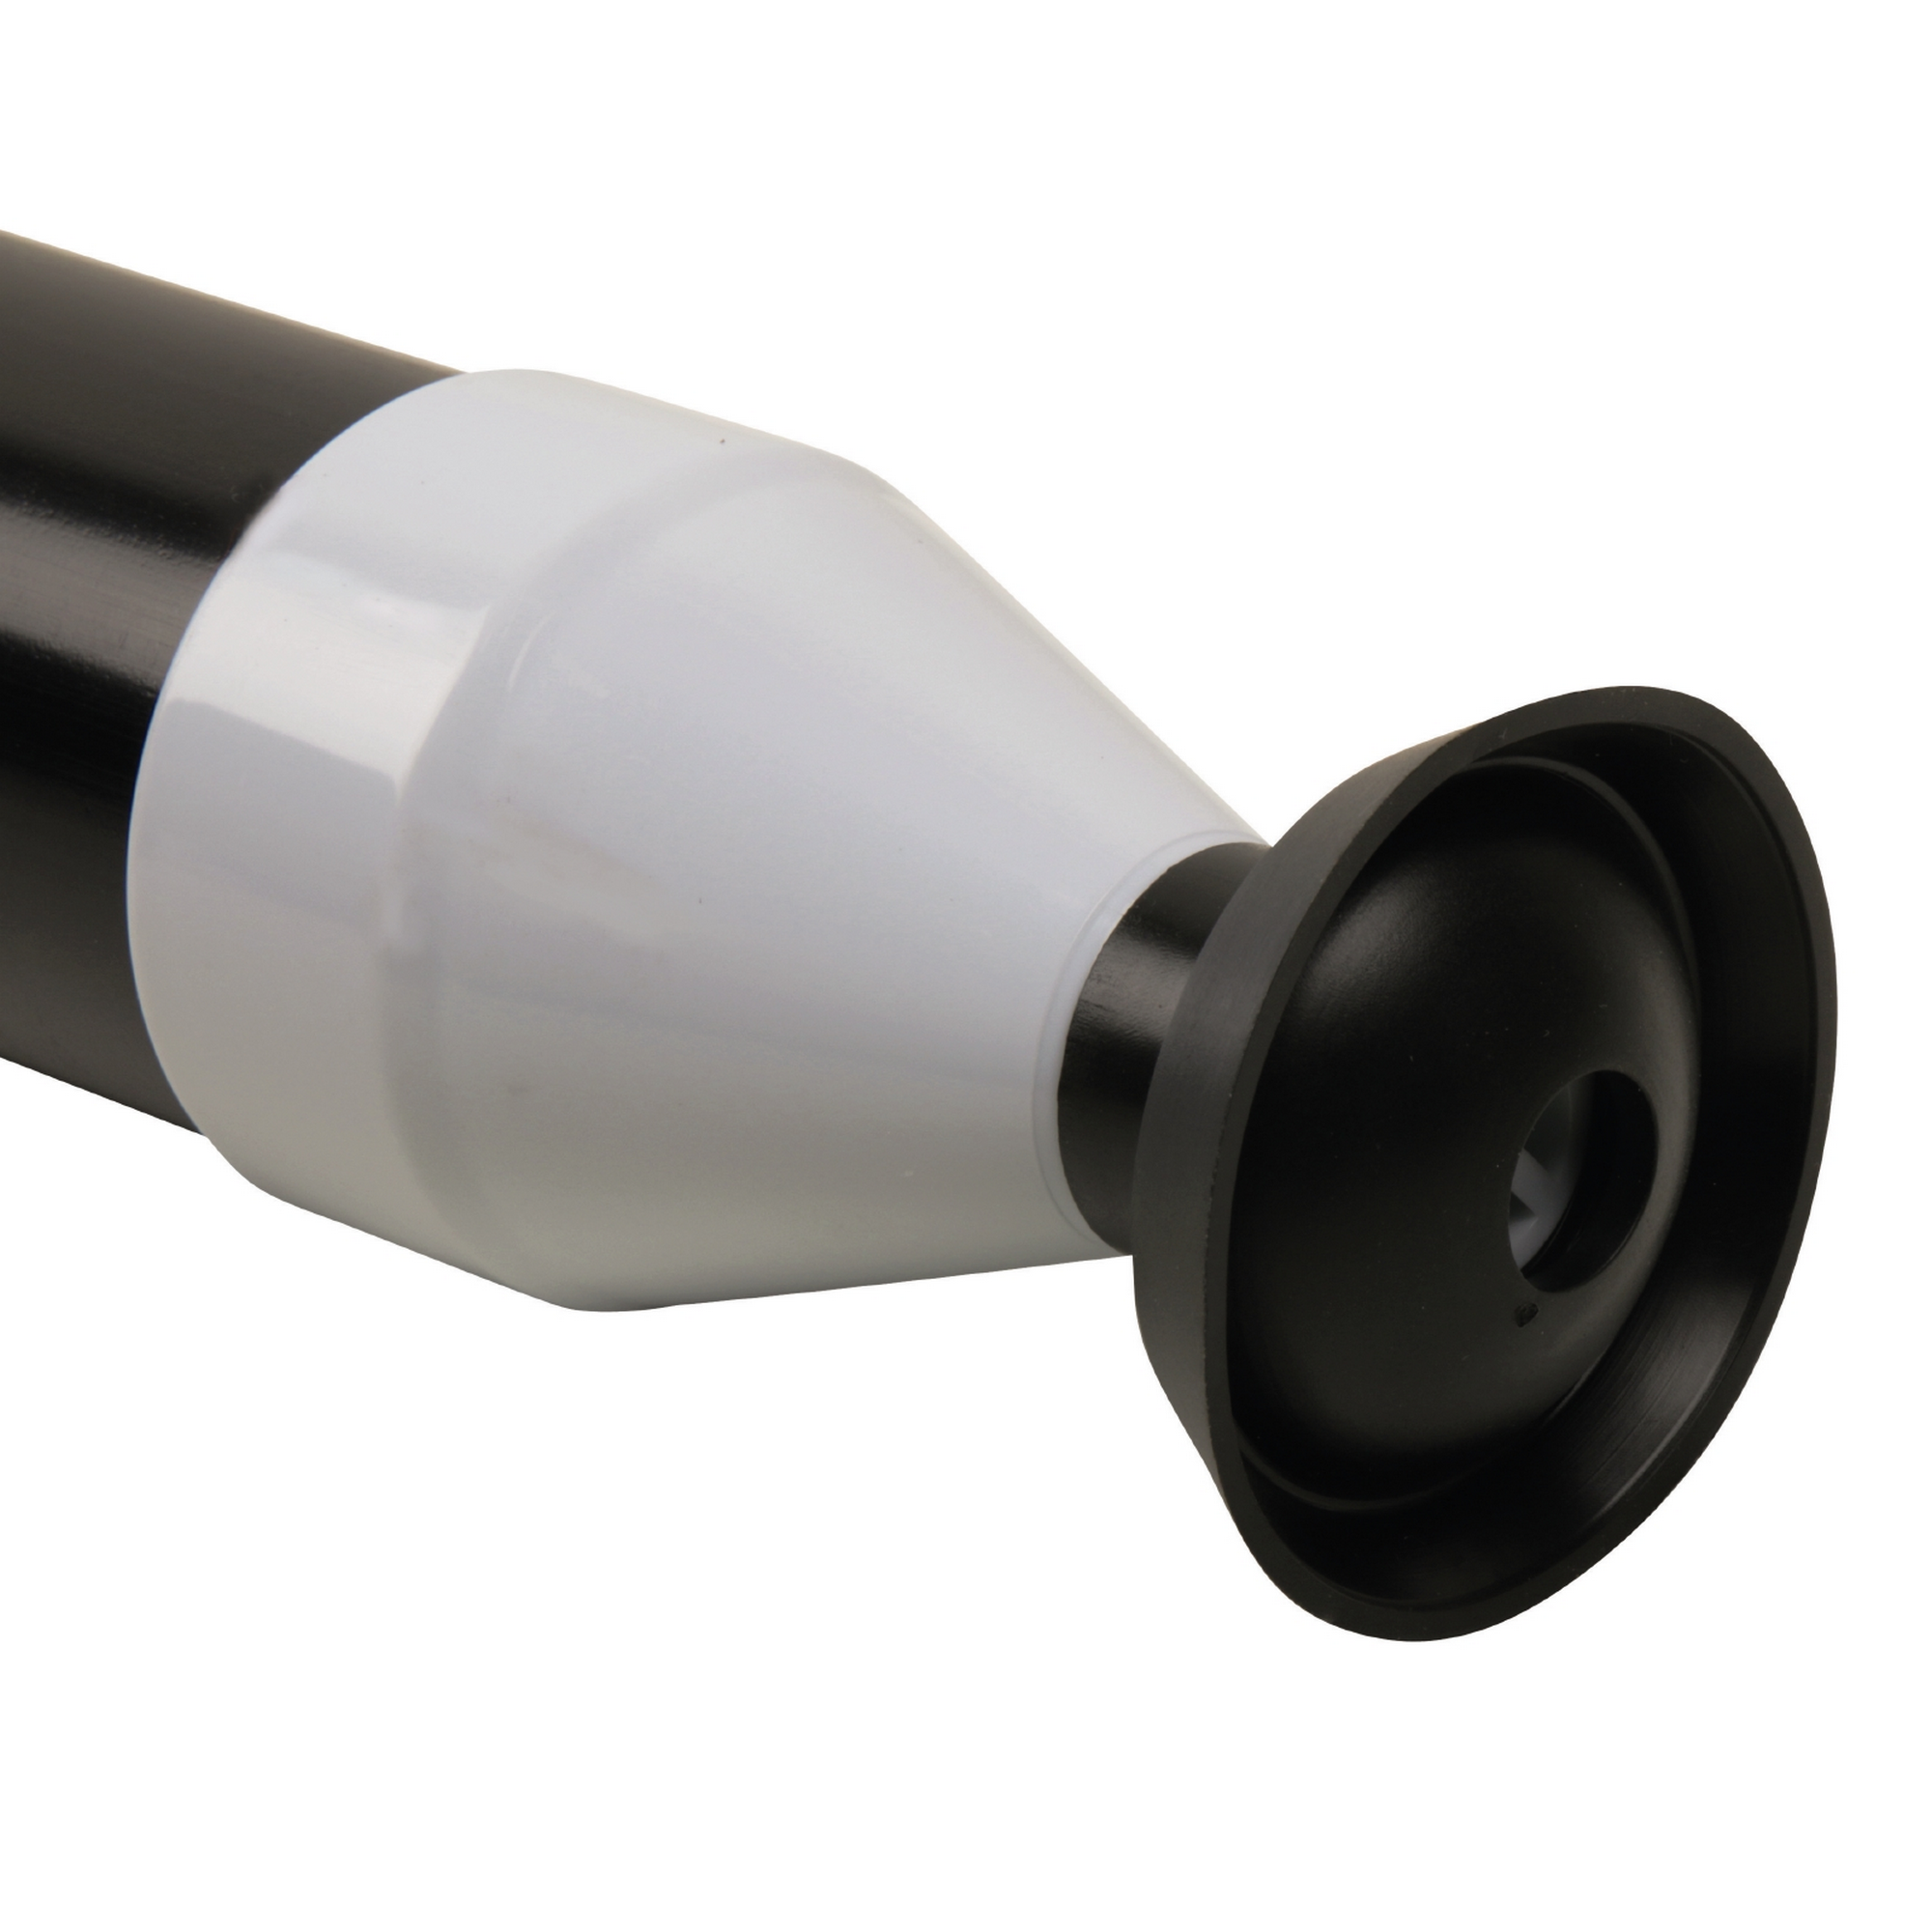 Rohrreingungspumpe schwarz/grau mit Adapter + product picture